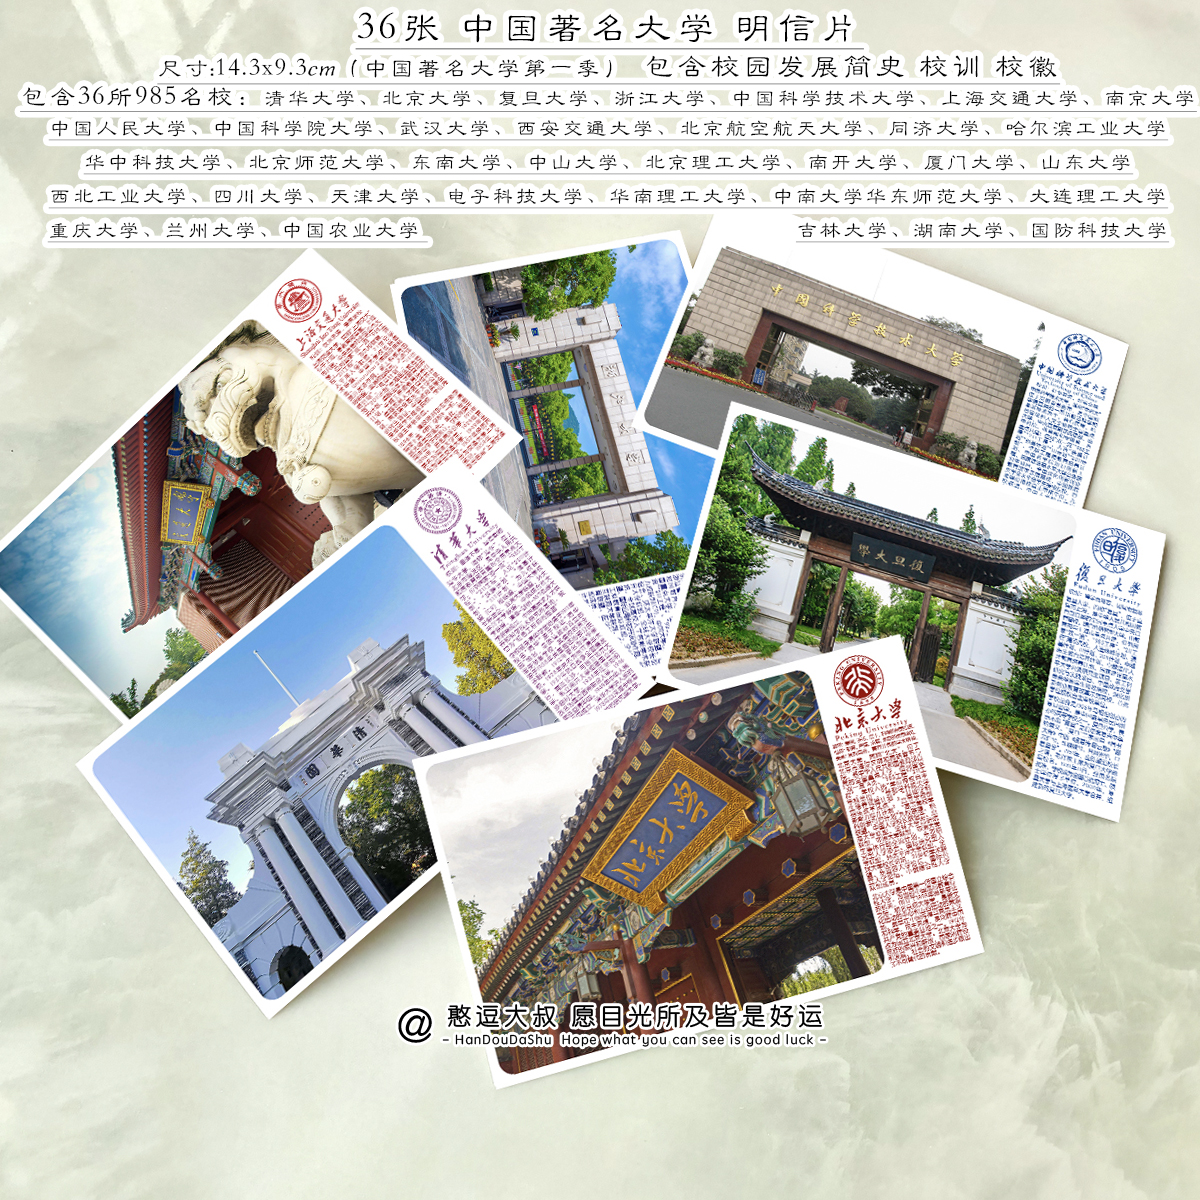 中国著名名牌大学高考励志梦想明信片世界名校风景送学生贺卡卡片